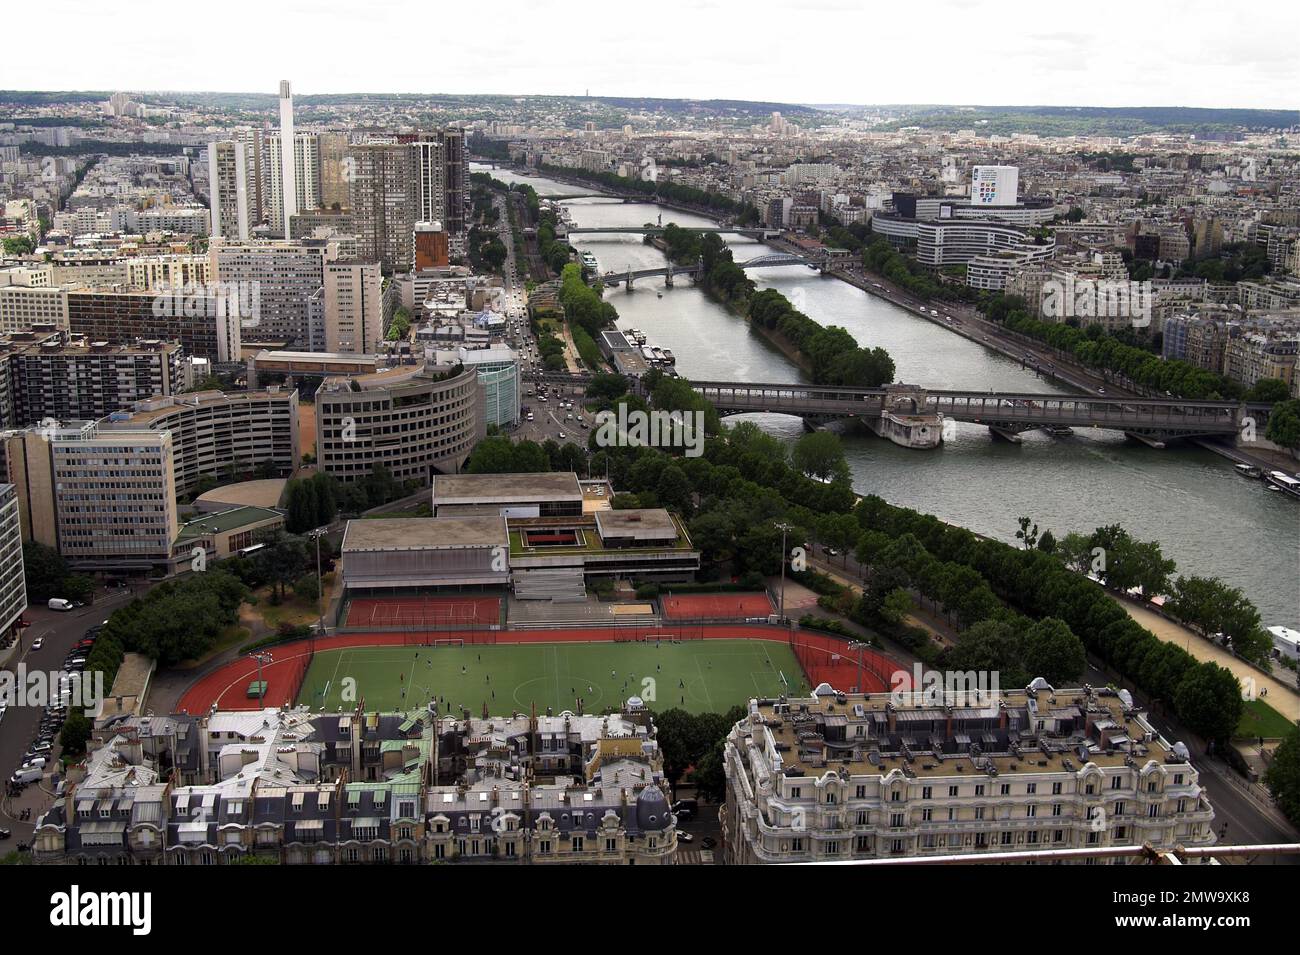 Paryż, Paris, Francja, France, Frankreich, Vue sur le pont sur la Seine; Blick auf die Brücke über die Seine; Mosty nad Sekwaną Banque D'Images